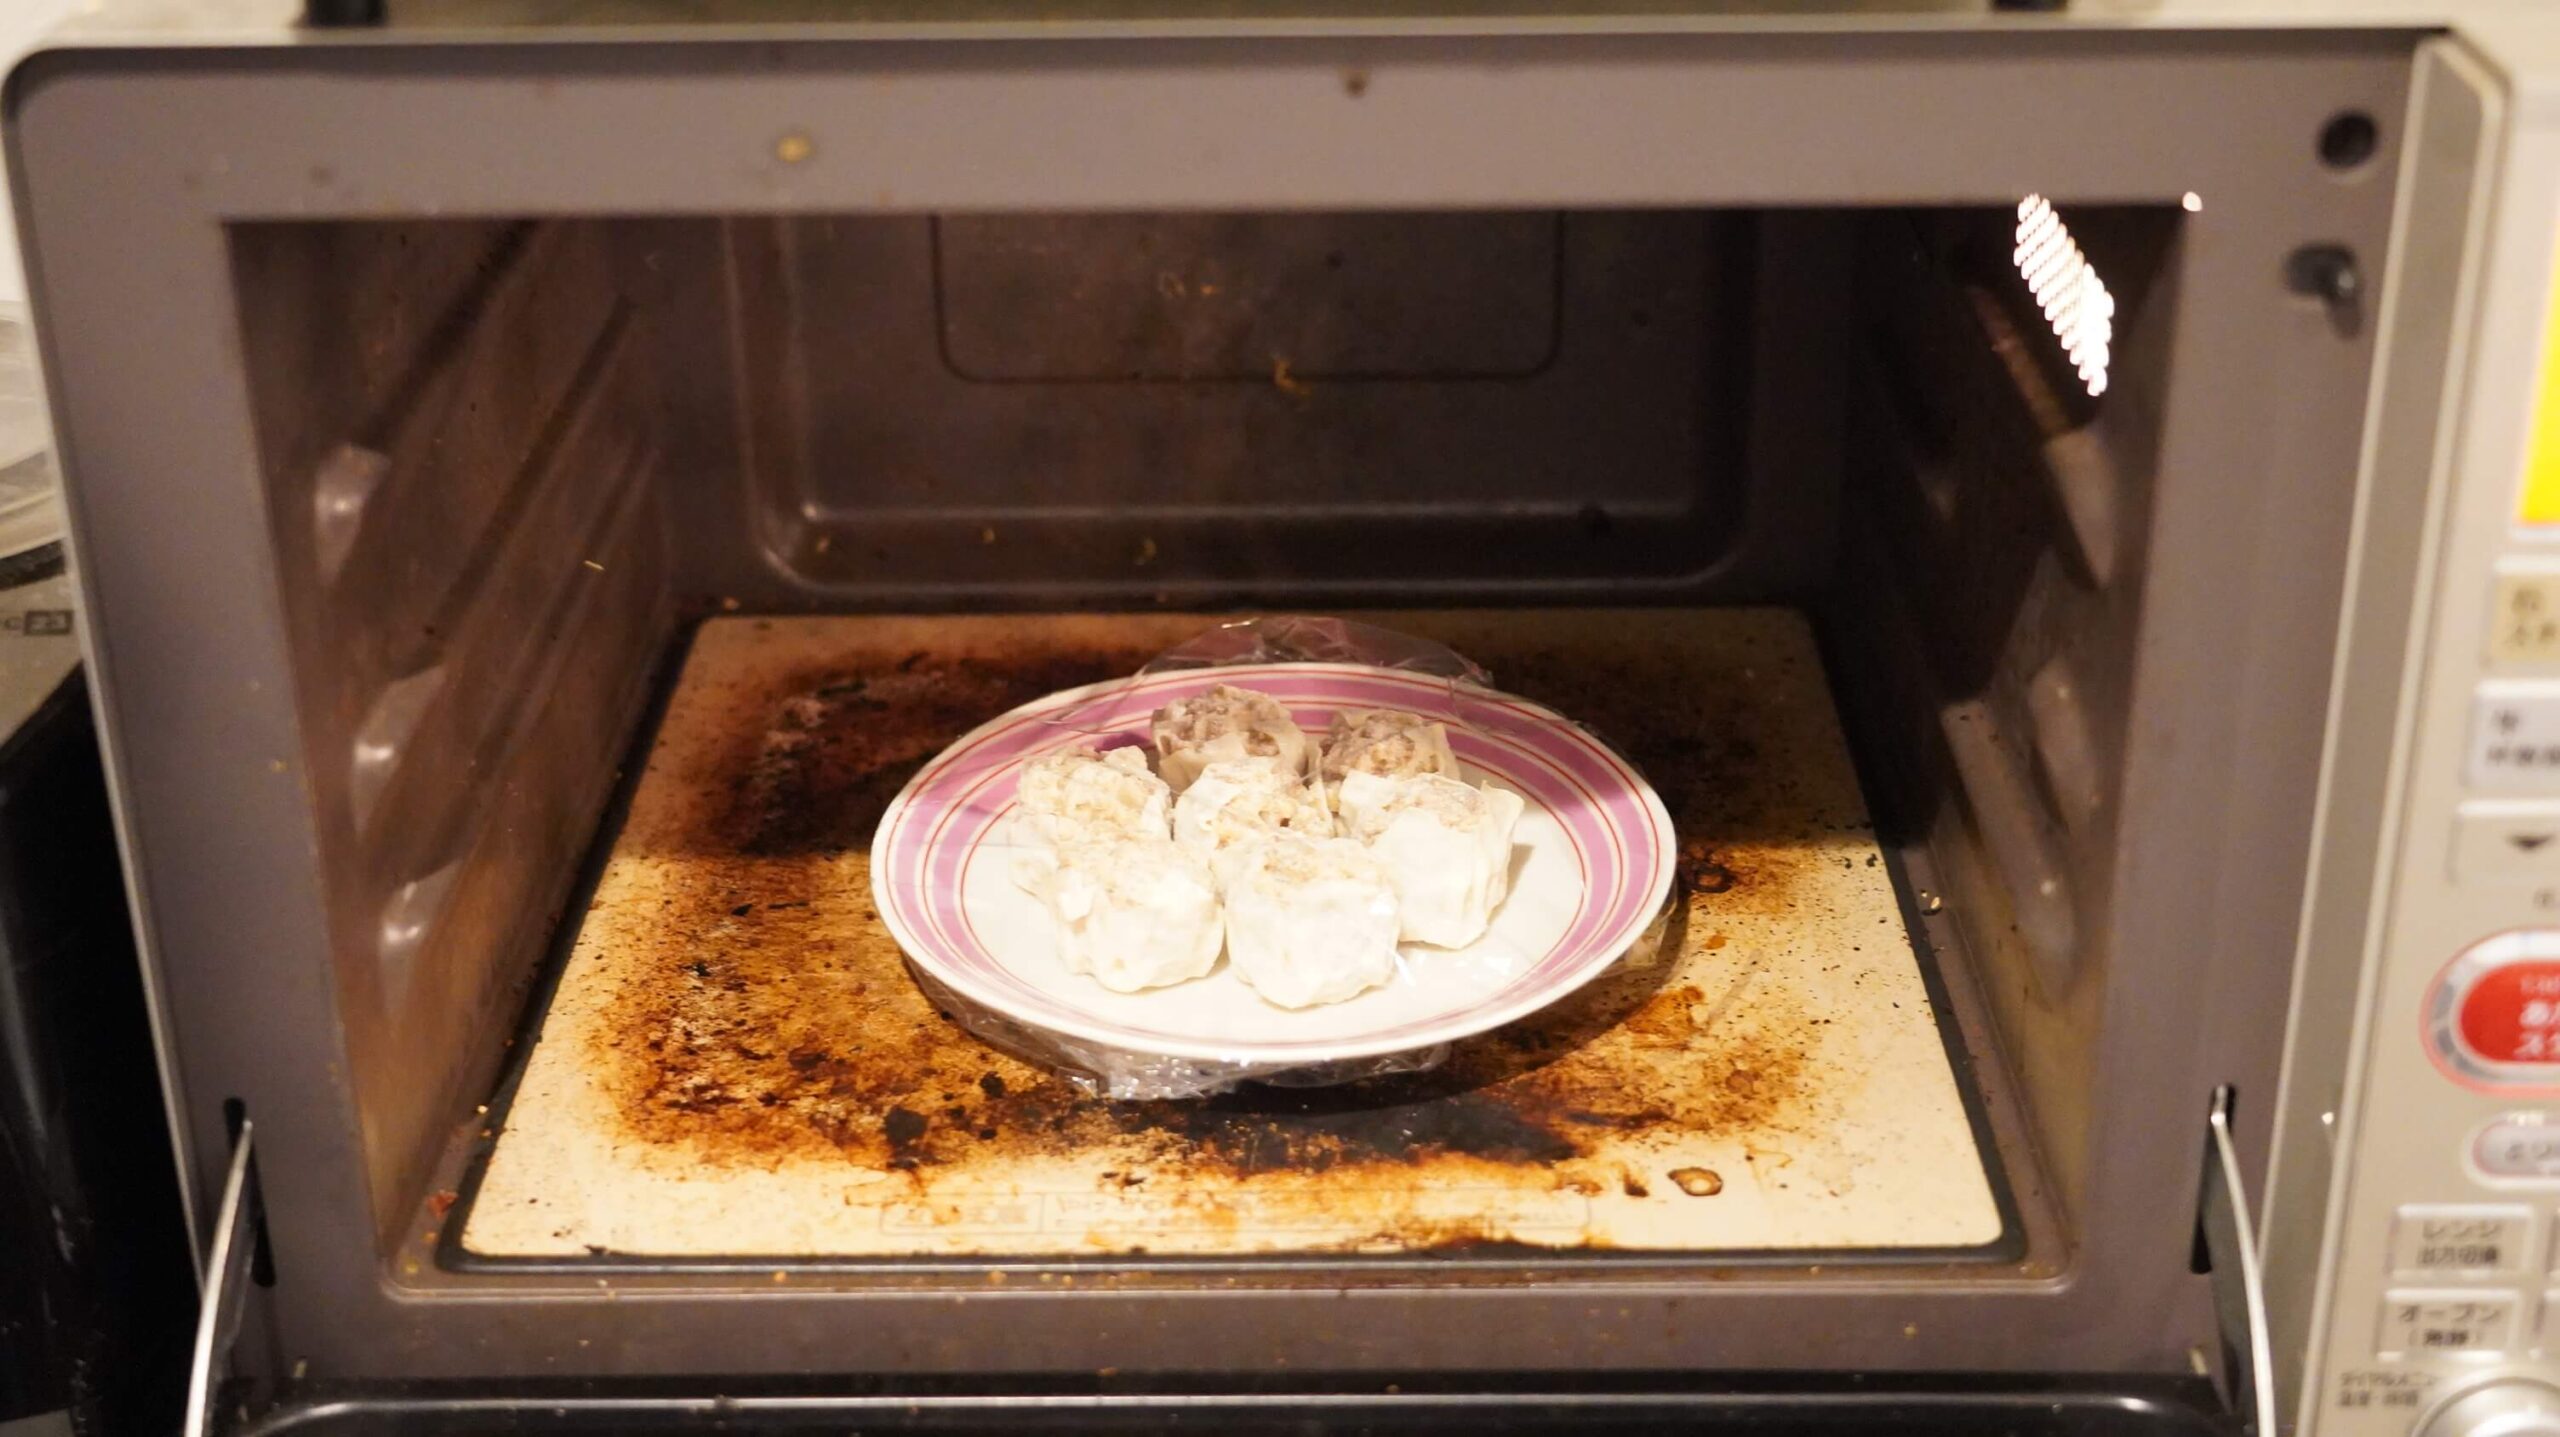 コストコのシューマイ冷凍食品「贅沢焼売」を電子レンジで加熱している写真